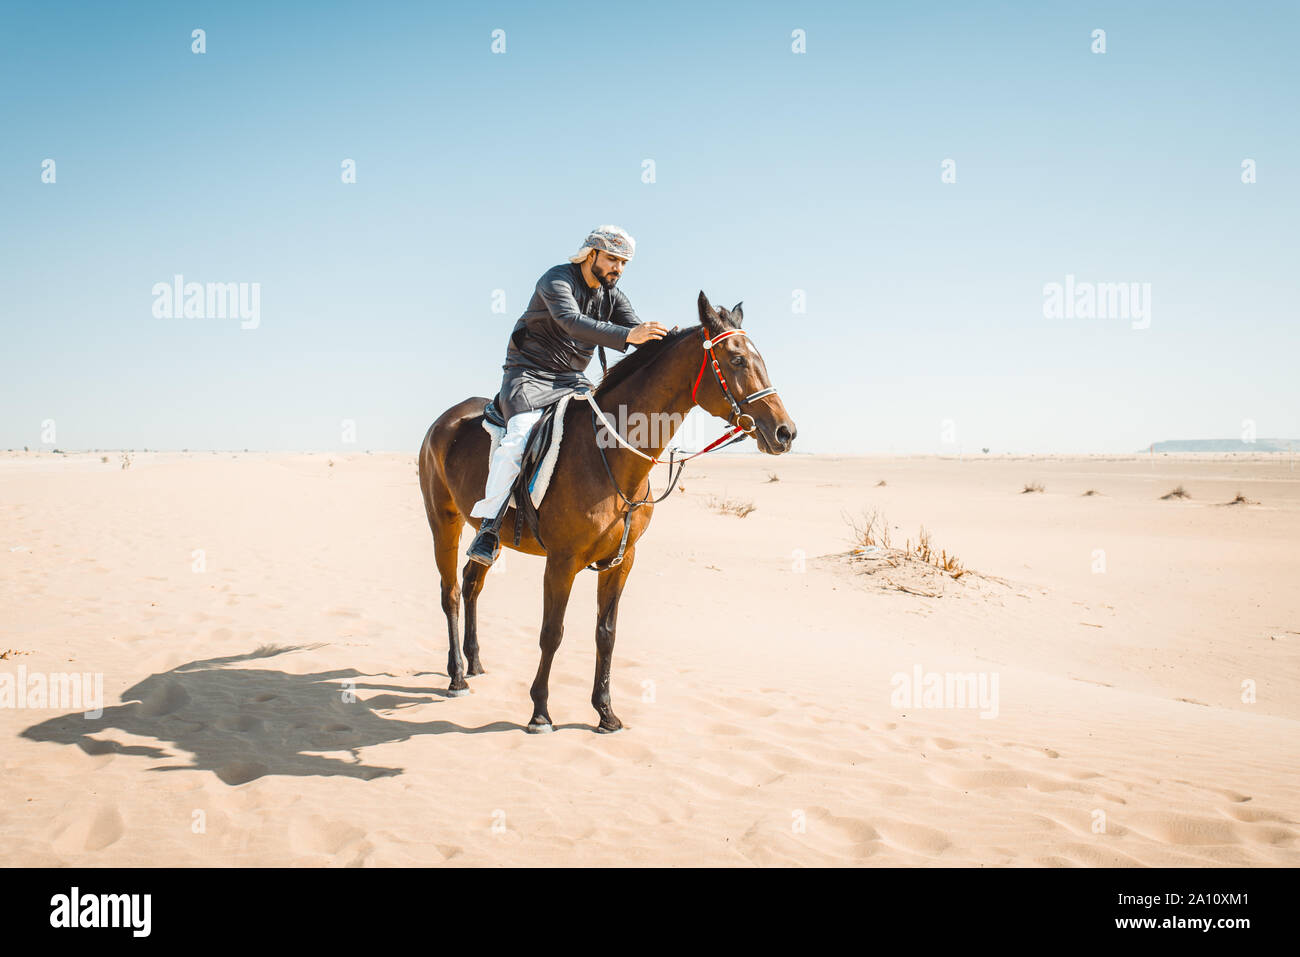 Junge Erwachsene mit Kandura, den Emiraten traditionelle Kleidung, Reiter sein Pferd in der Wüste Stockfoto